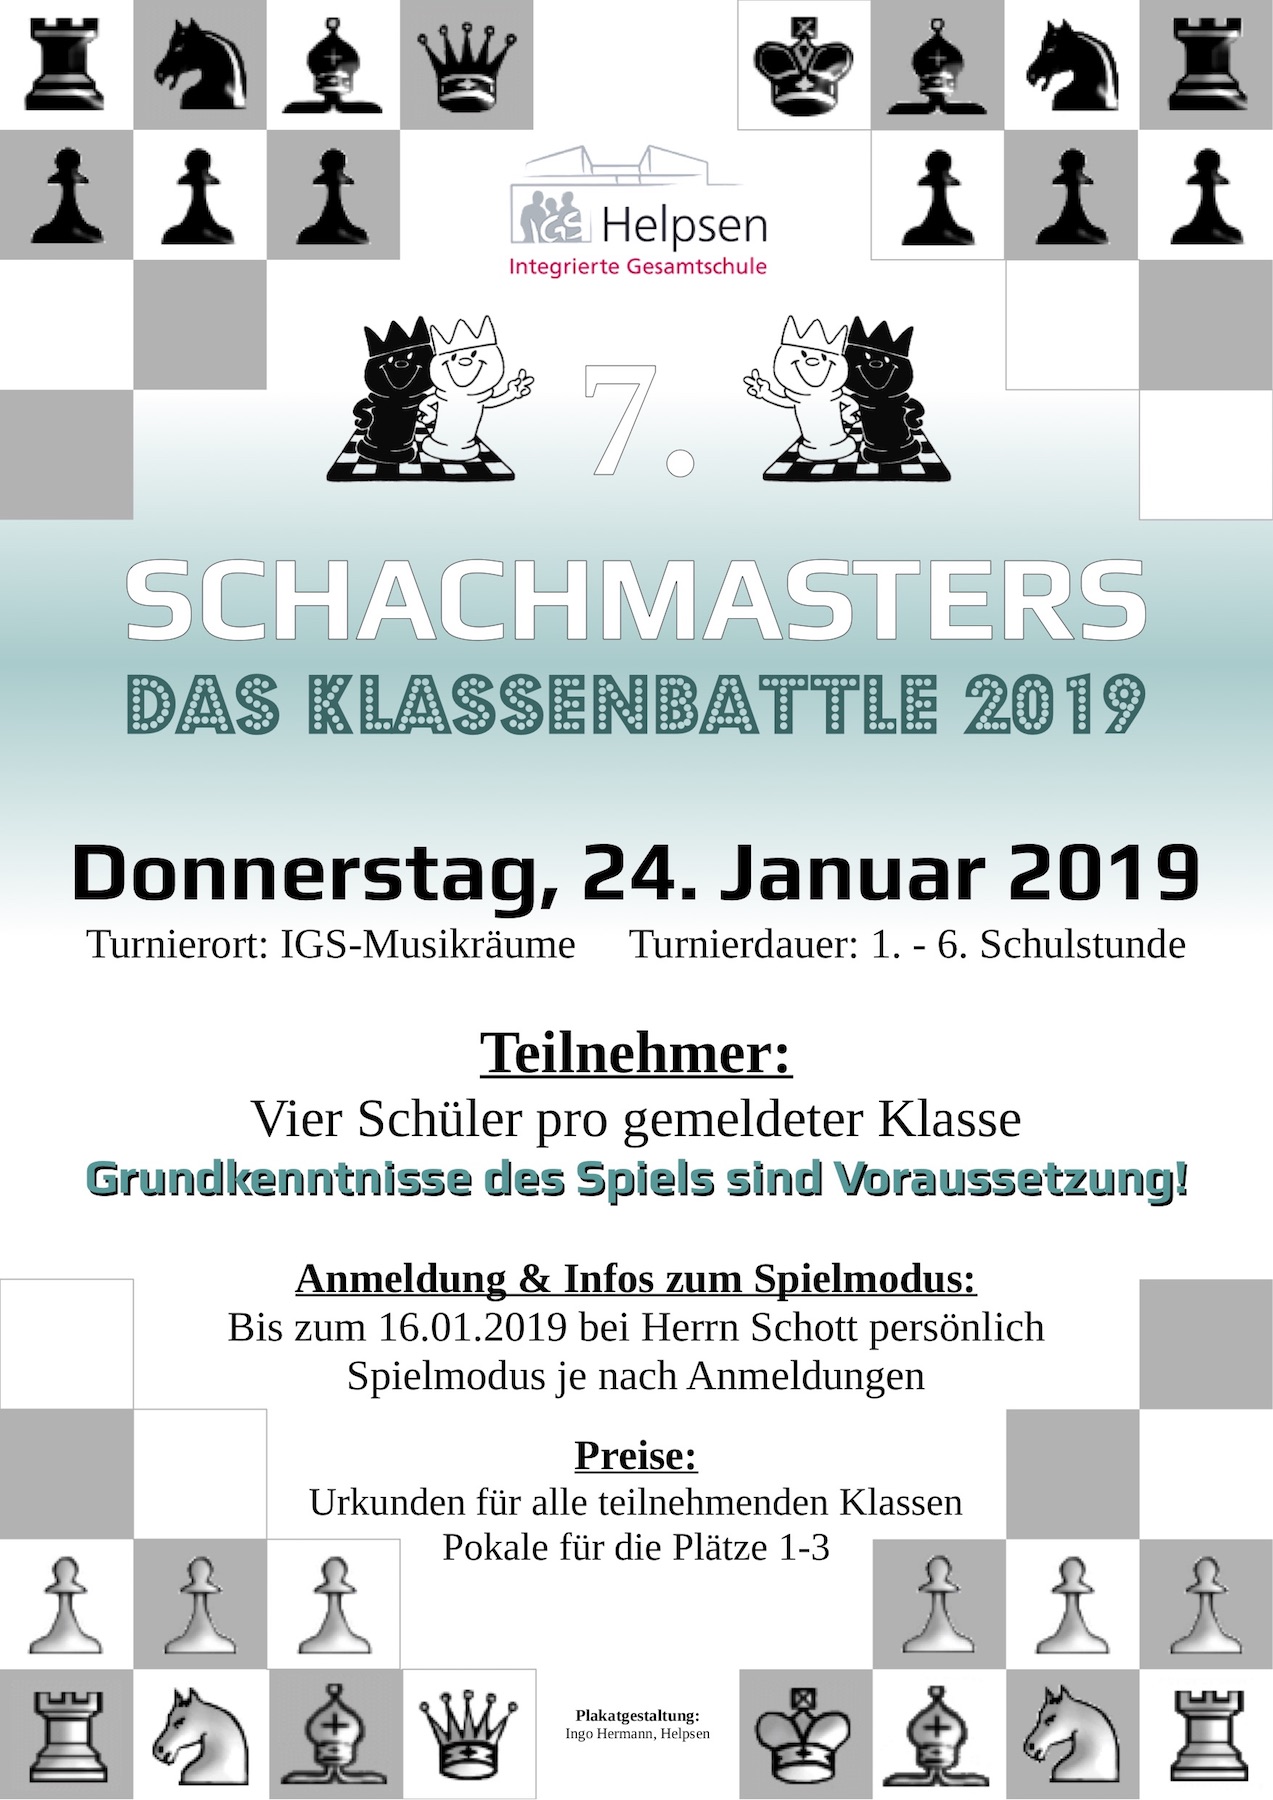 Plakat Schachmasters 7 - Klassenbattle 2019